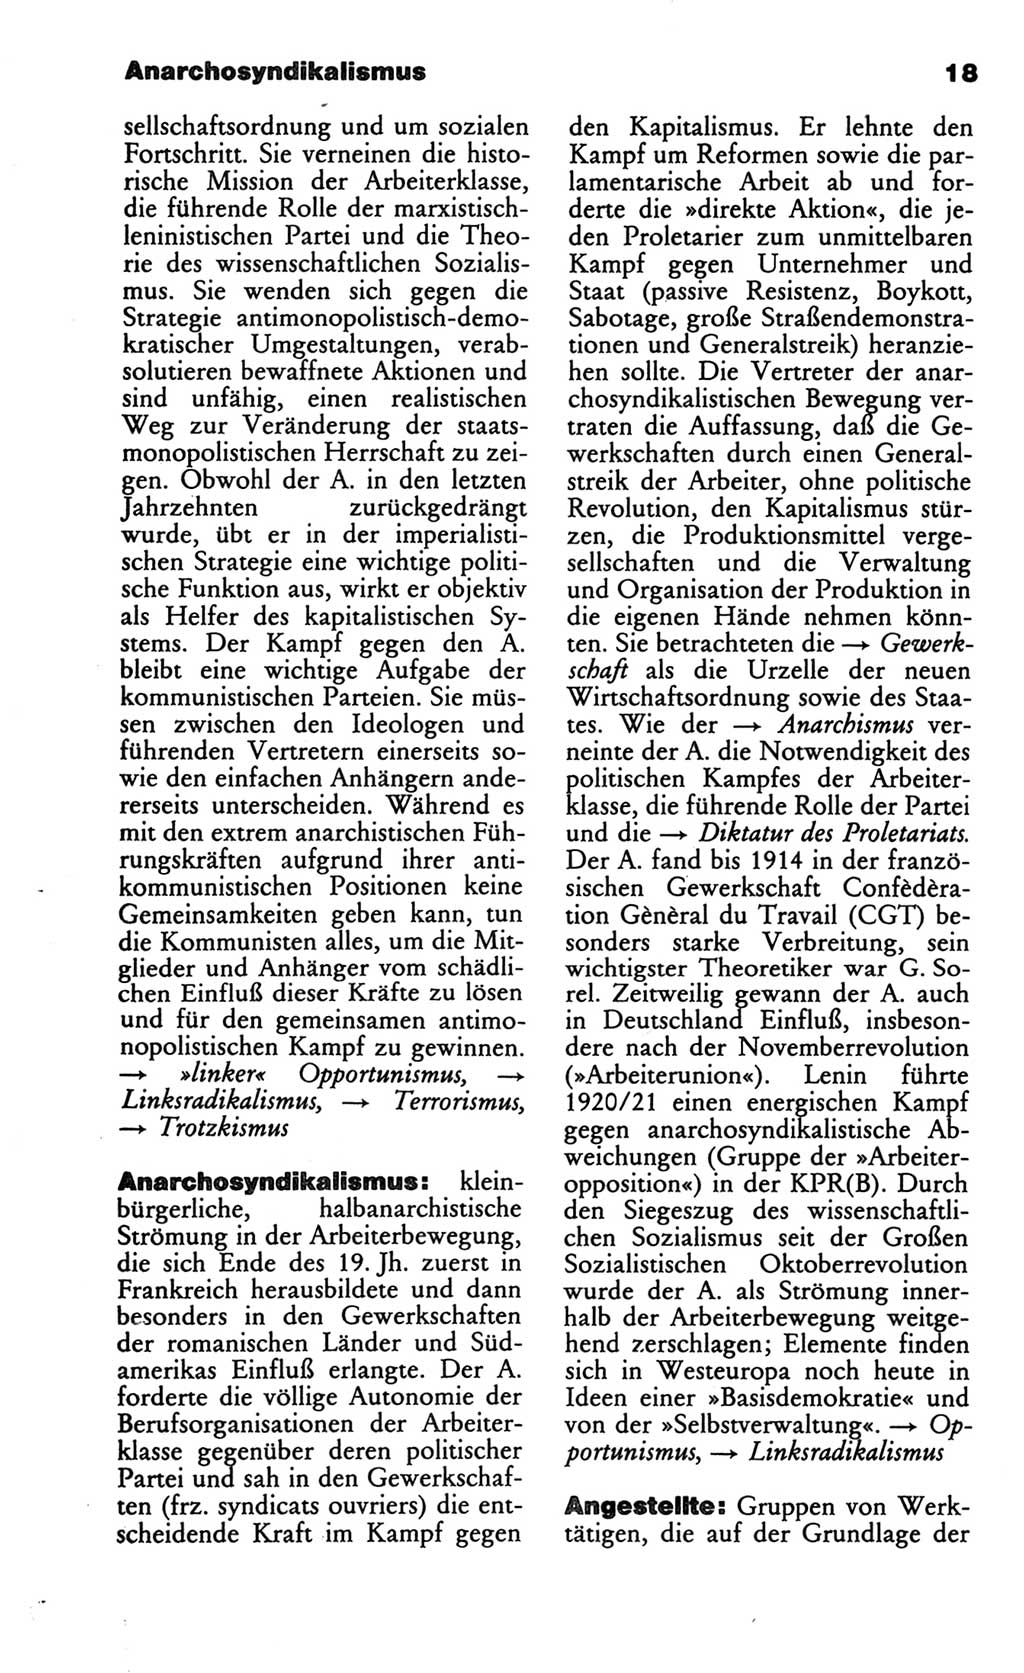 Wörterbuch des wissenschaftlichen Kommunismus [Deutsche Demokratische Republik (DDR)] 1986, Seite 18 (Wb. wiss. Komm. DDR 1986, S. 18)